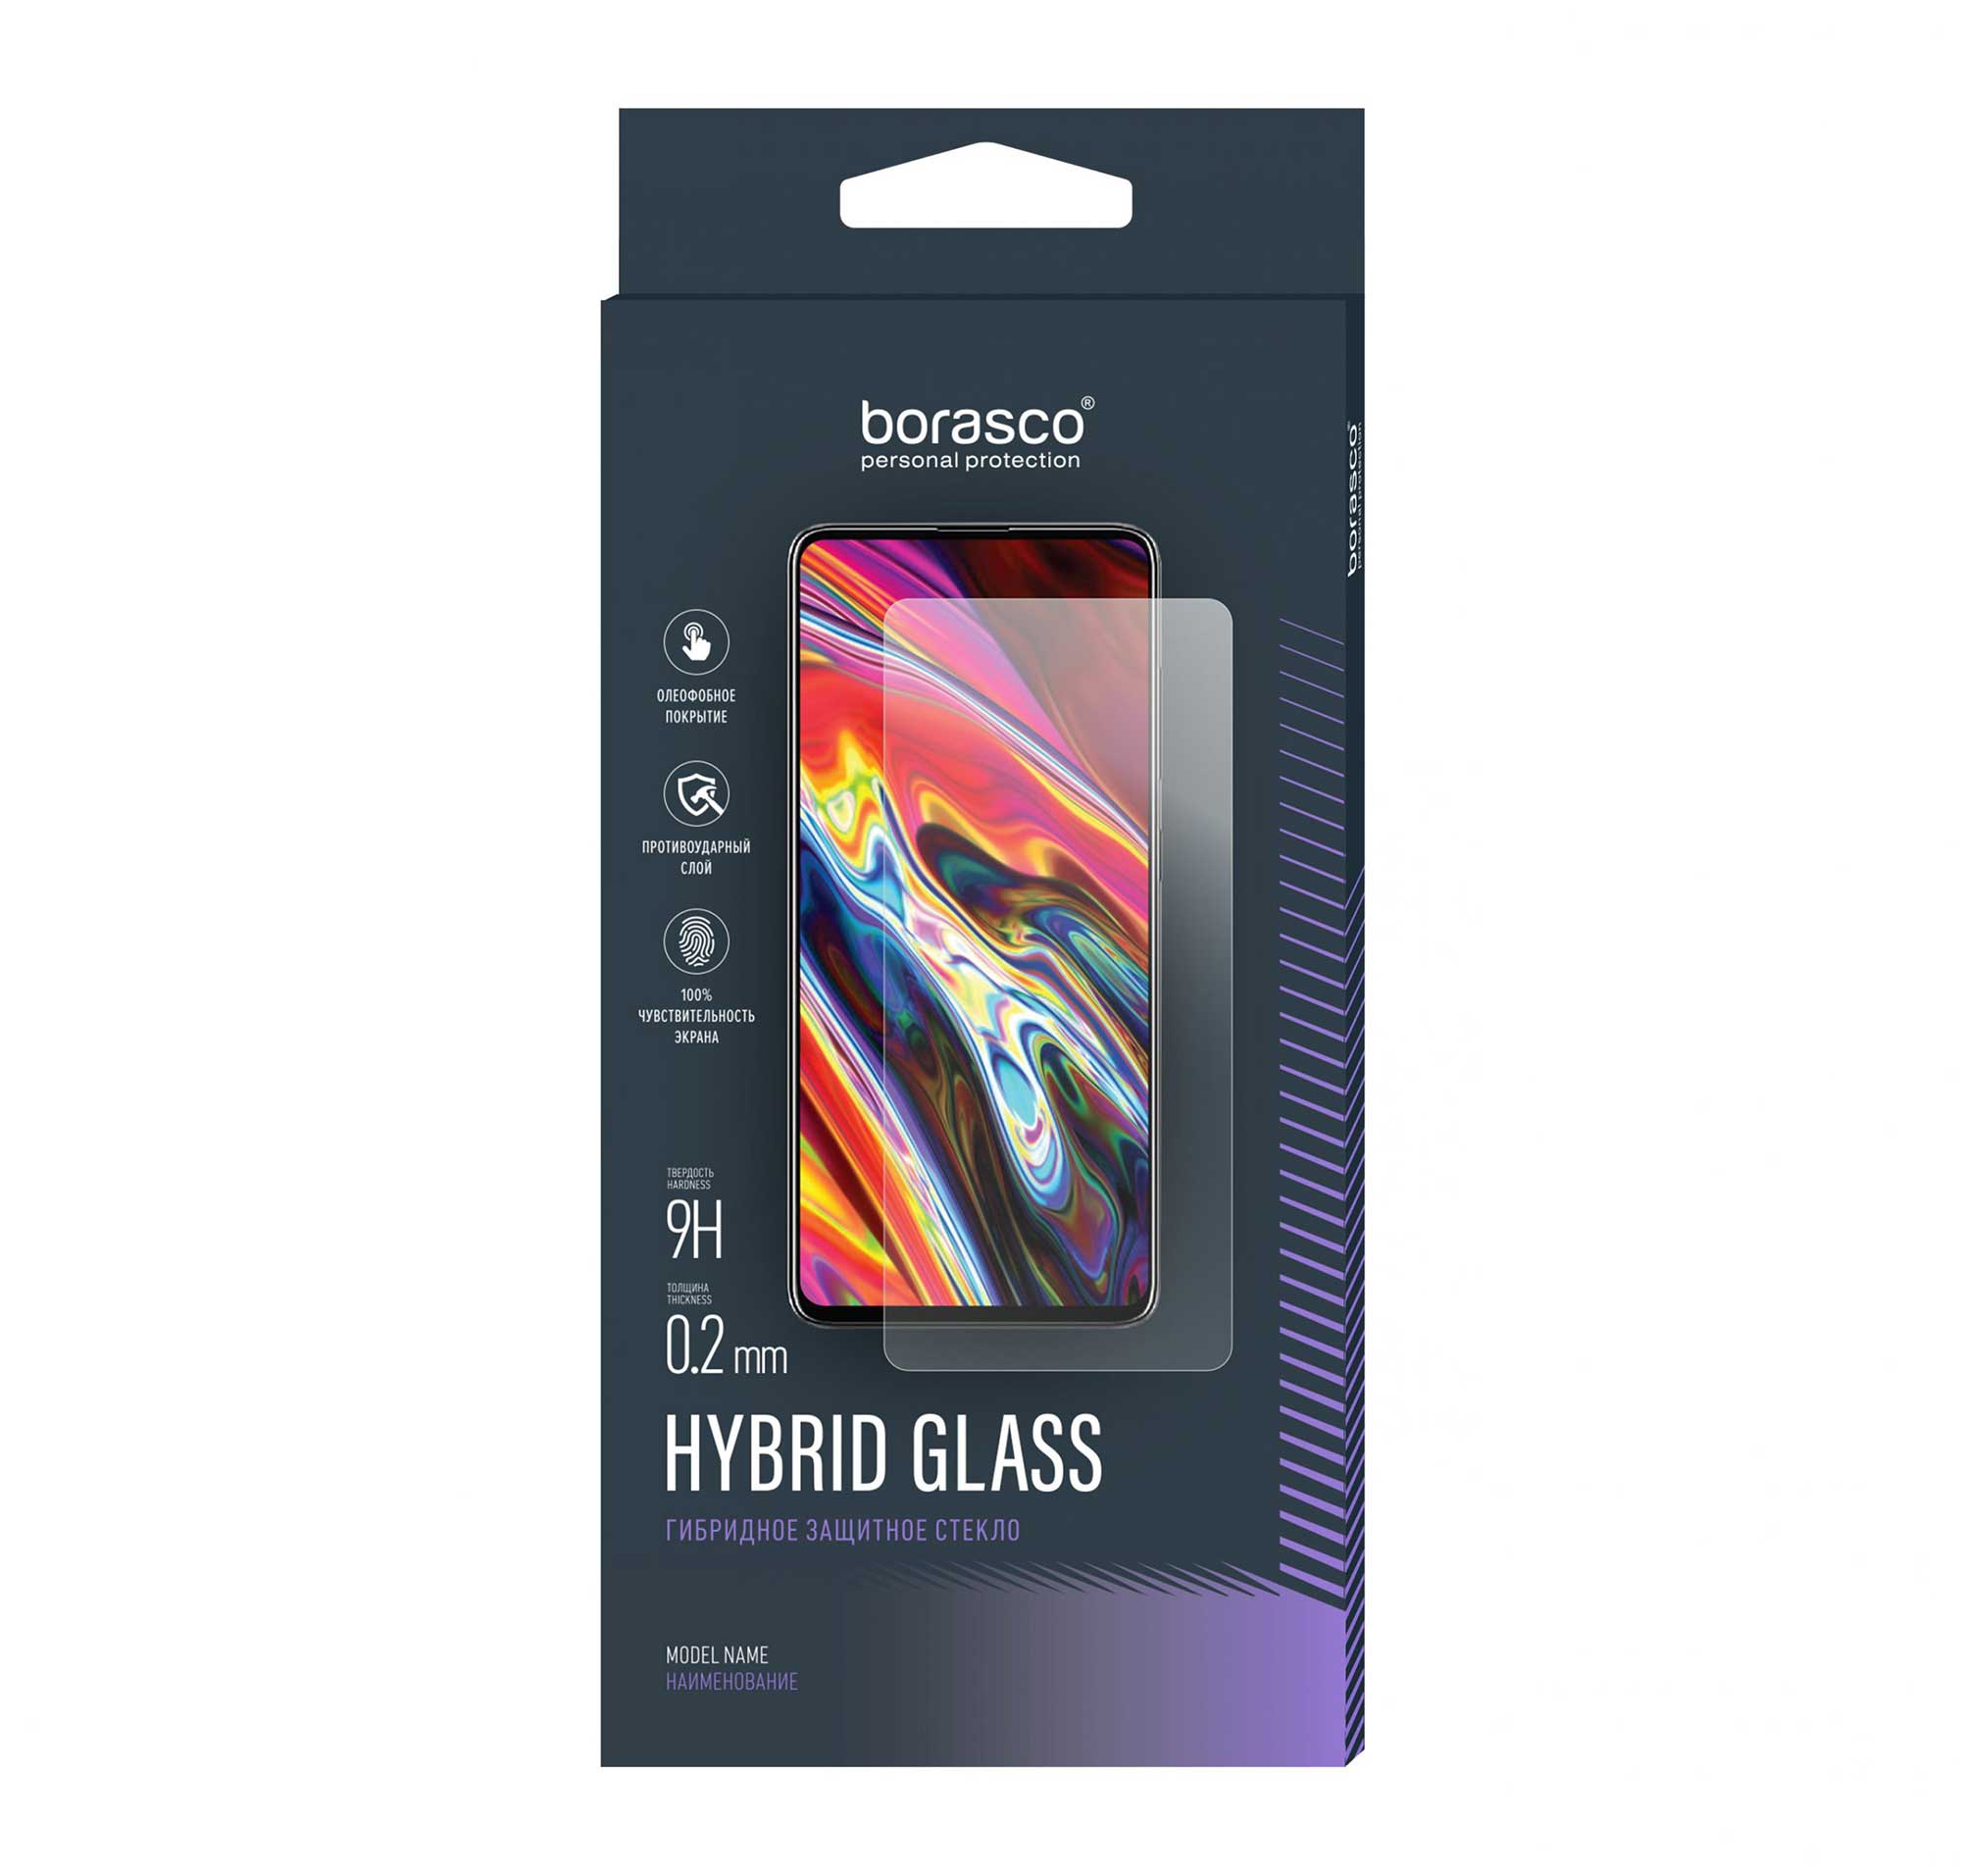 Защитное стекло Hybrid Glass для ZTE Blade A3 2020 re pa чехол накладка artcolor для zte blade a3 2020 с принтом череп красок